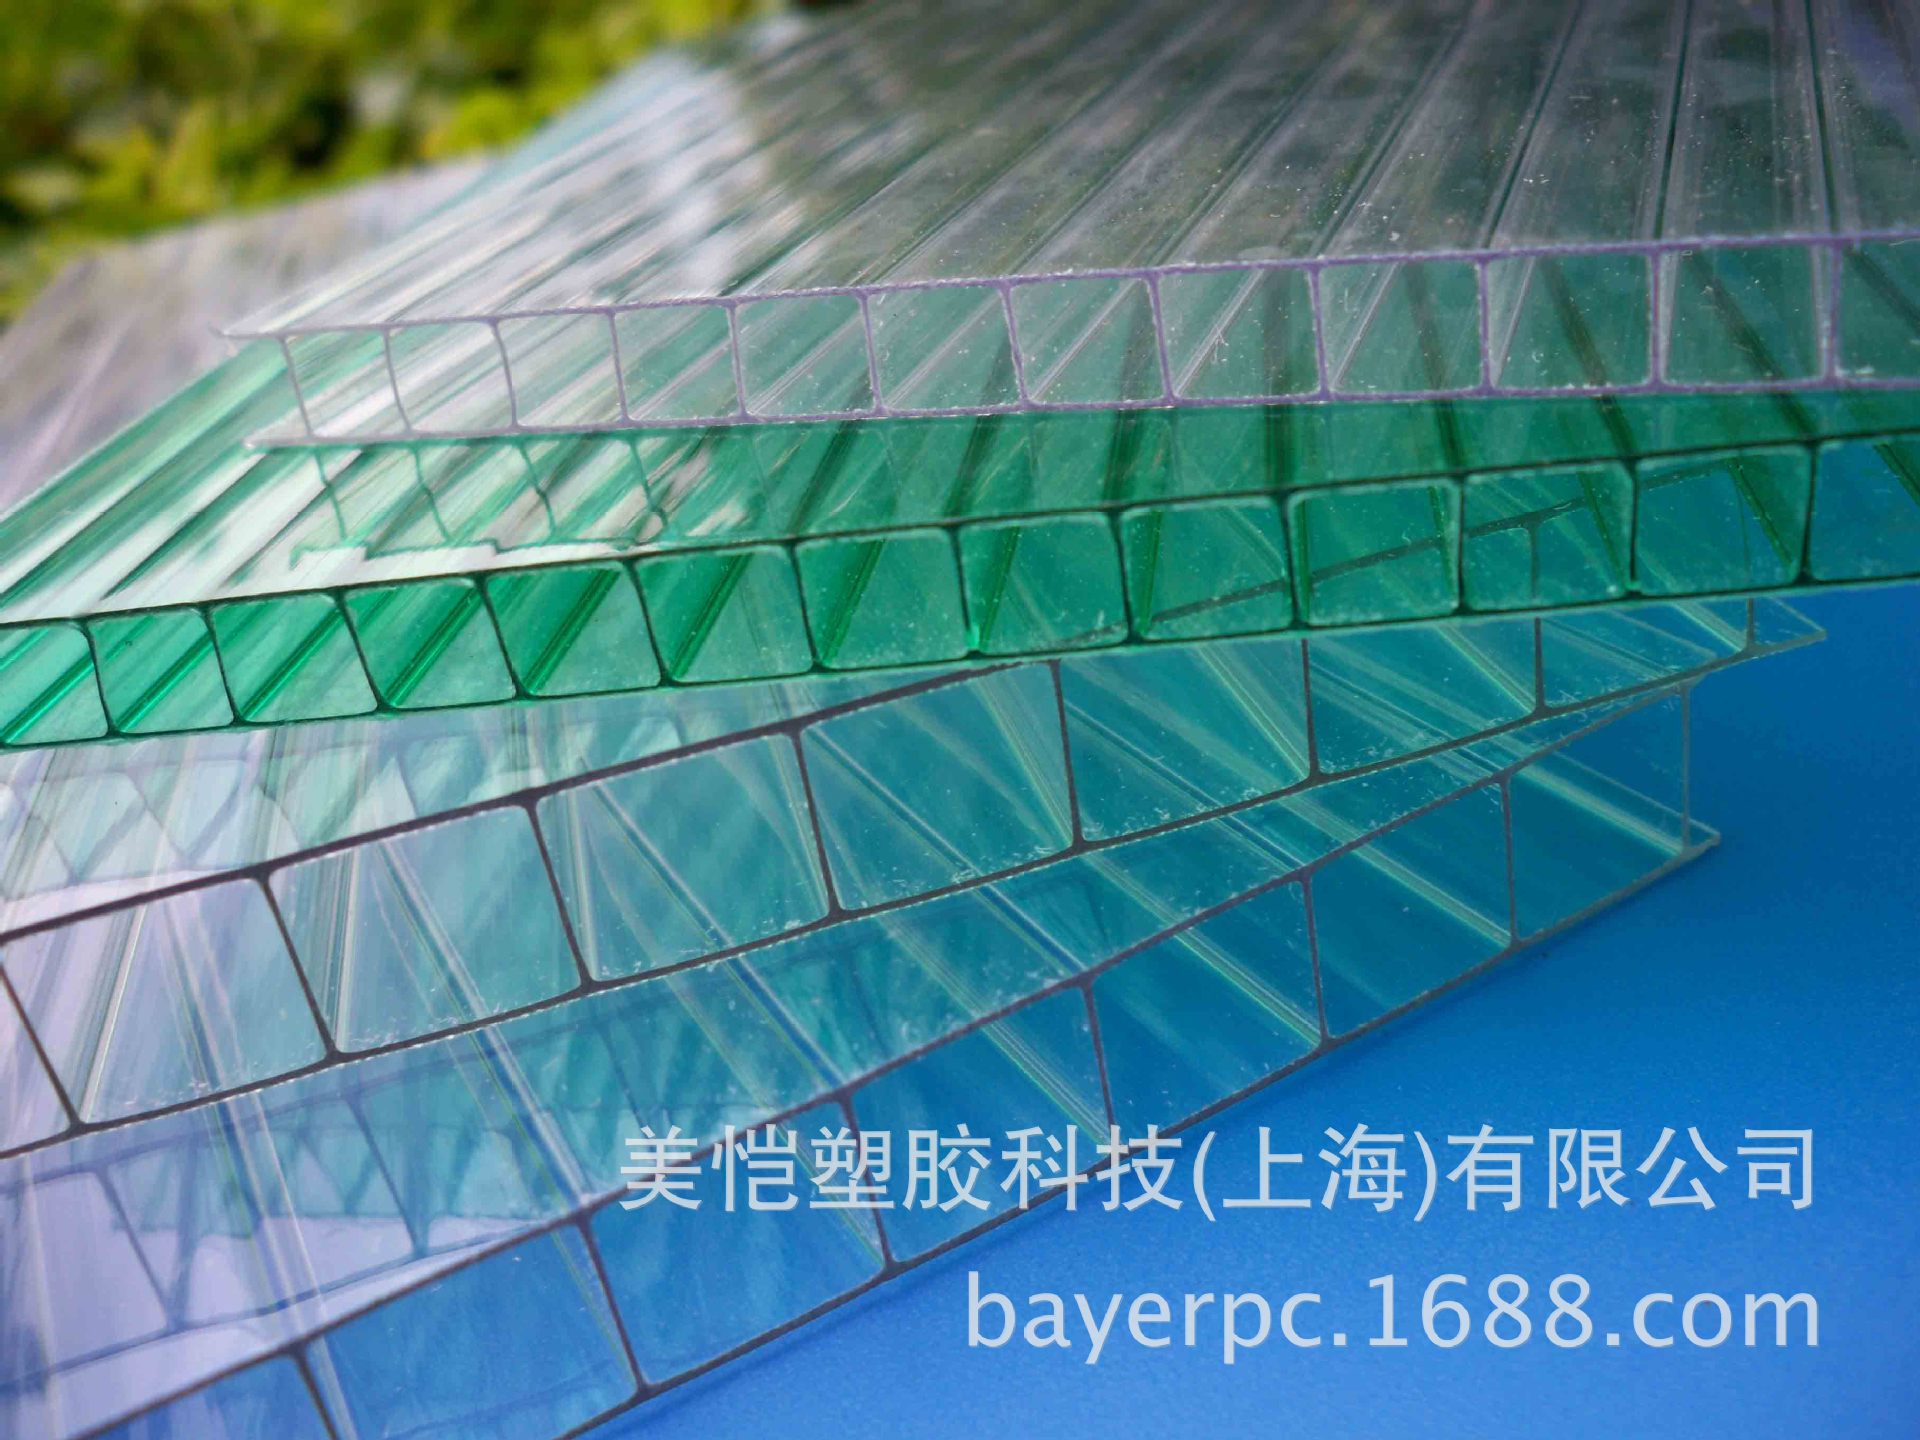 江苏徐州区PC阳光板二层三层四层多层蜂窝结构聚碳酸酯中空阳光板示例图83